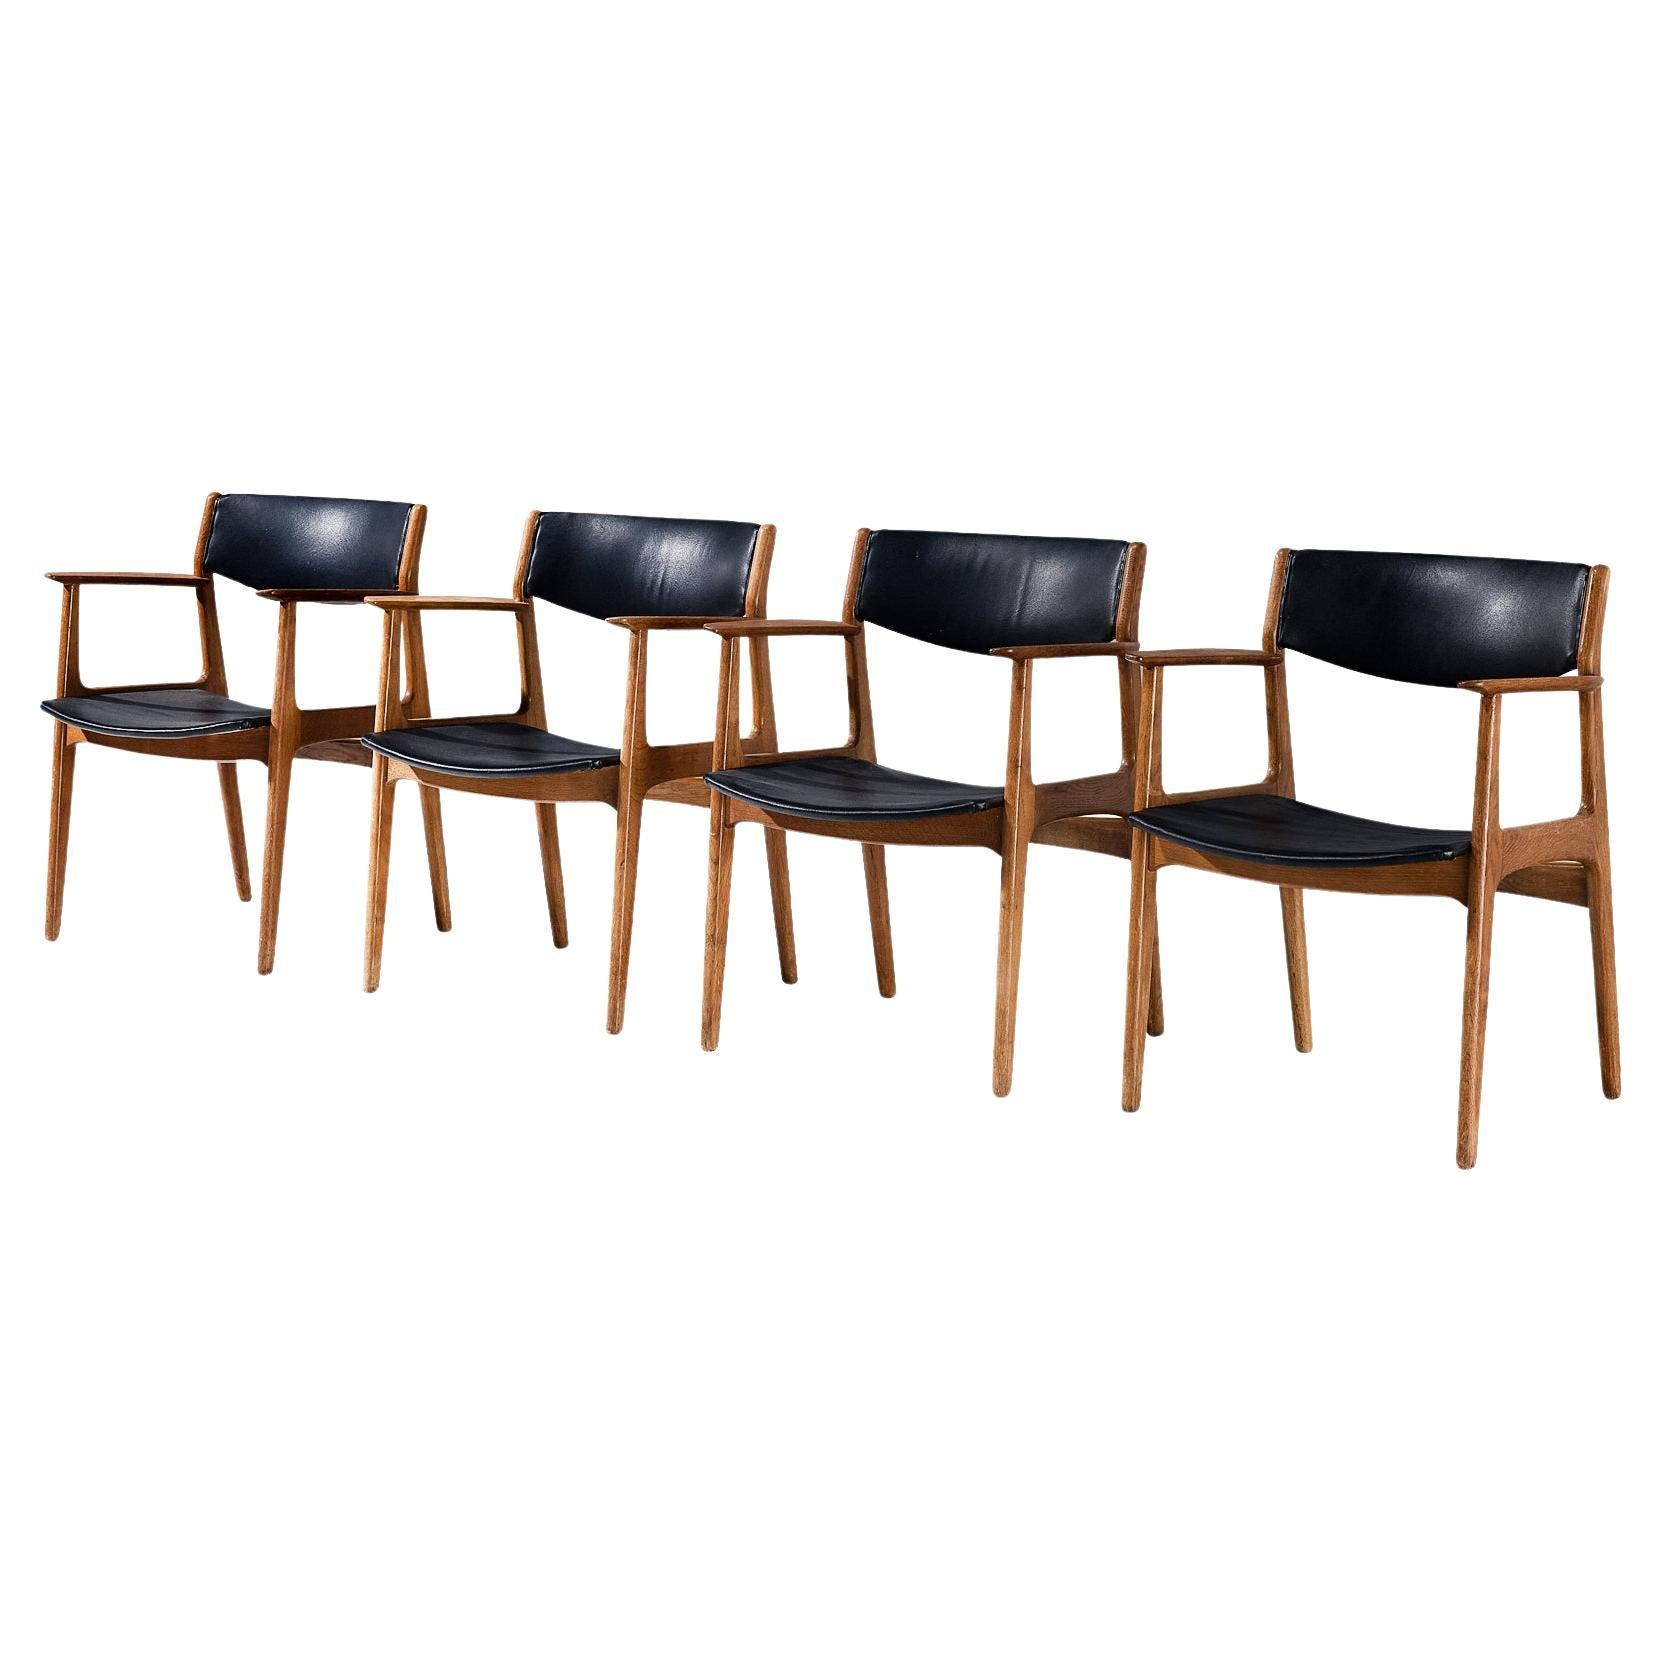 Ensemble danois de quatre fauteuils en Oak Oak et simili cuir noir